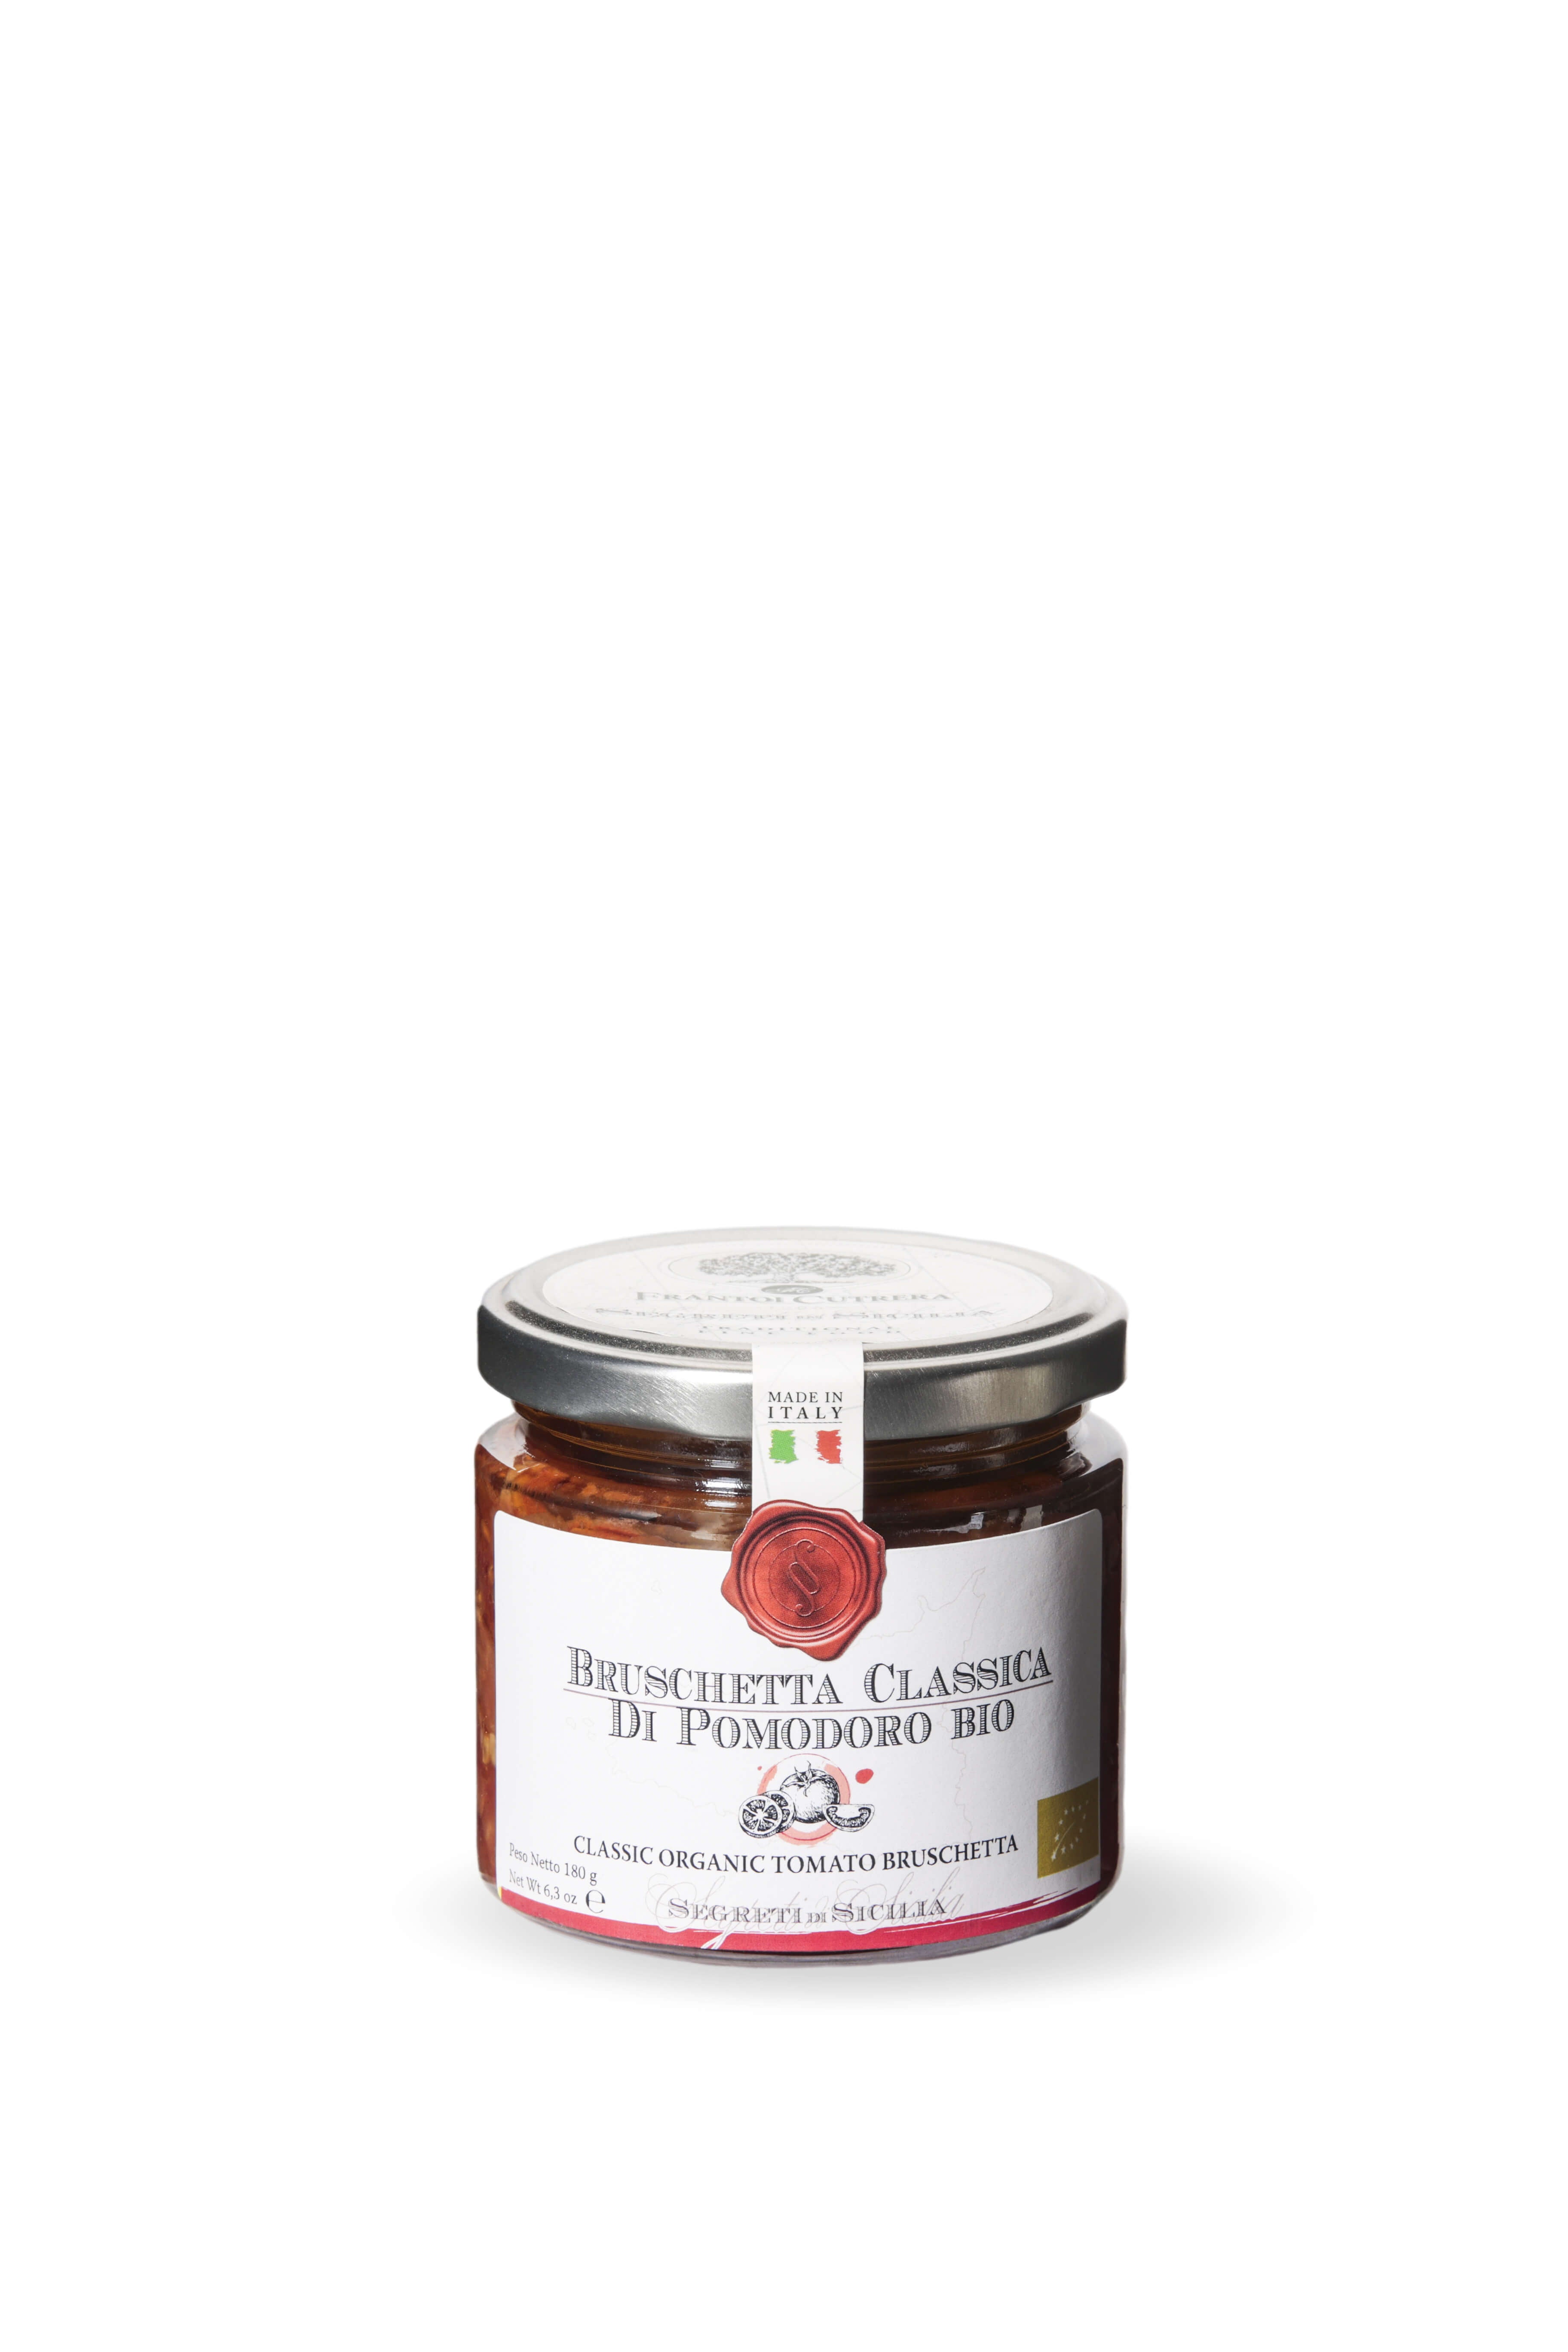 Classic organic tomato bruschetta – Secrets of Sicily